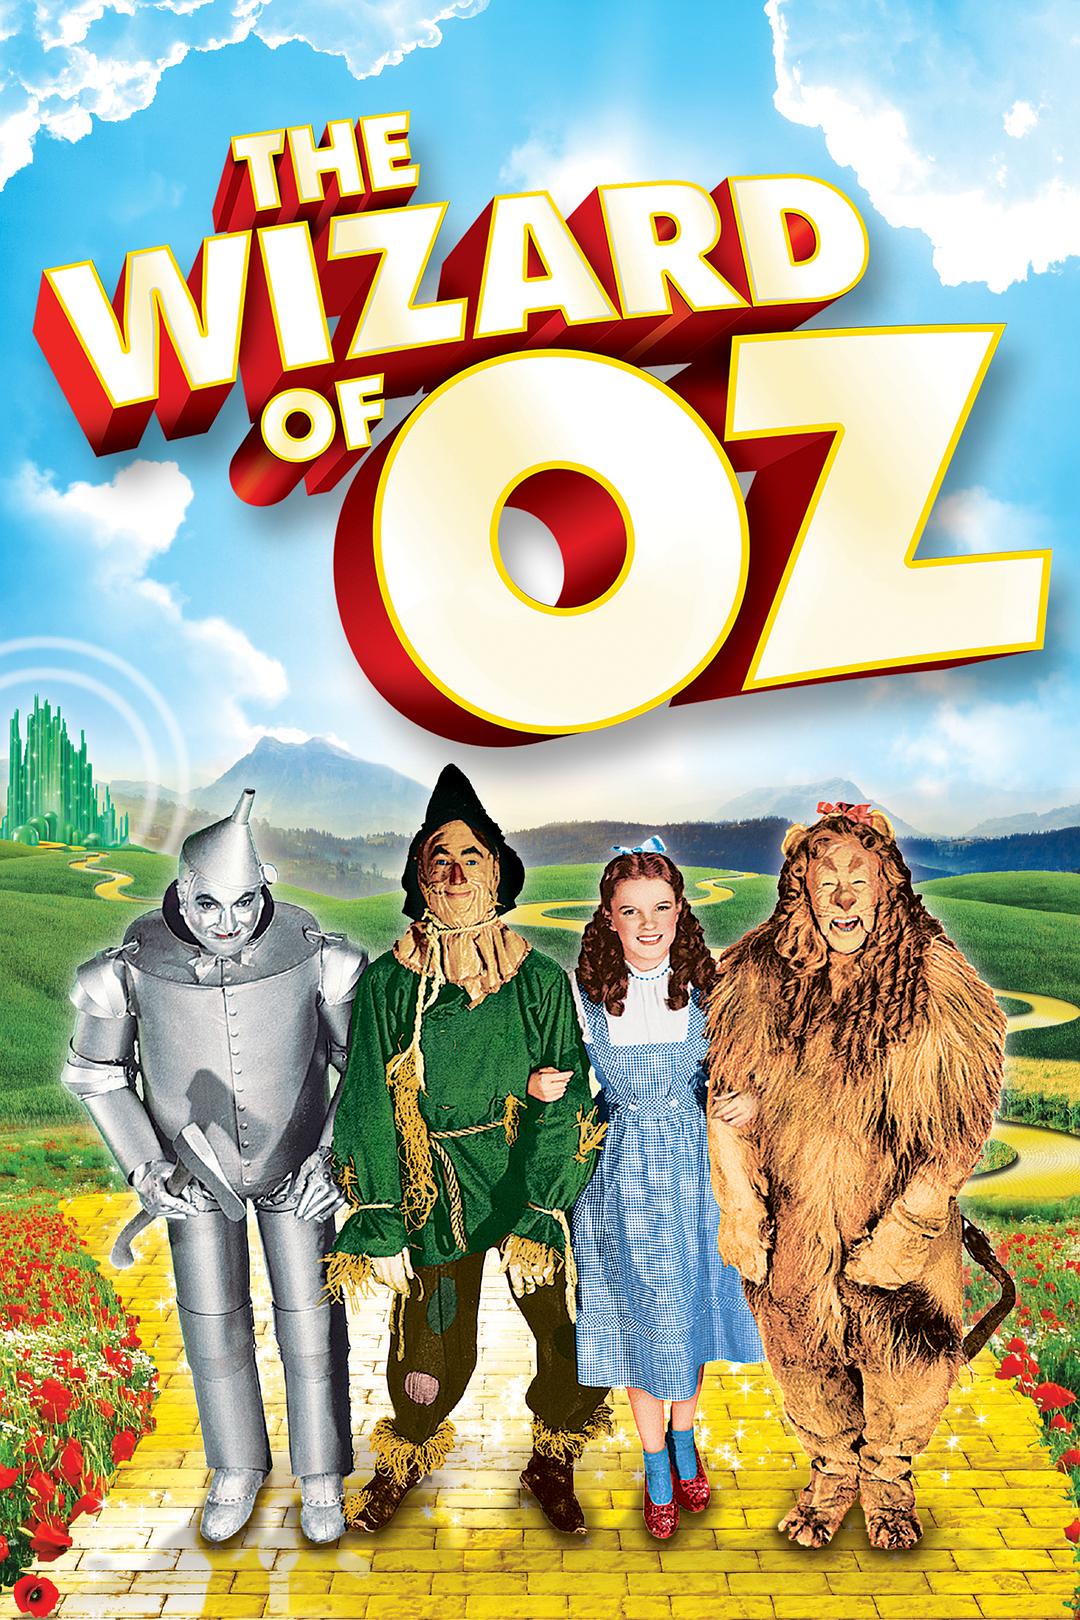 绿野仙踪/OZ国历险记 The.Wizard.of.Oz.1939.2160p.BluRay.HEVC.DTS-HD.MA.5.1-COASTER 77.81GB-1.png